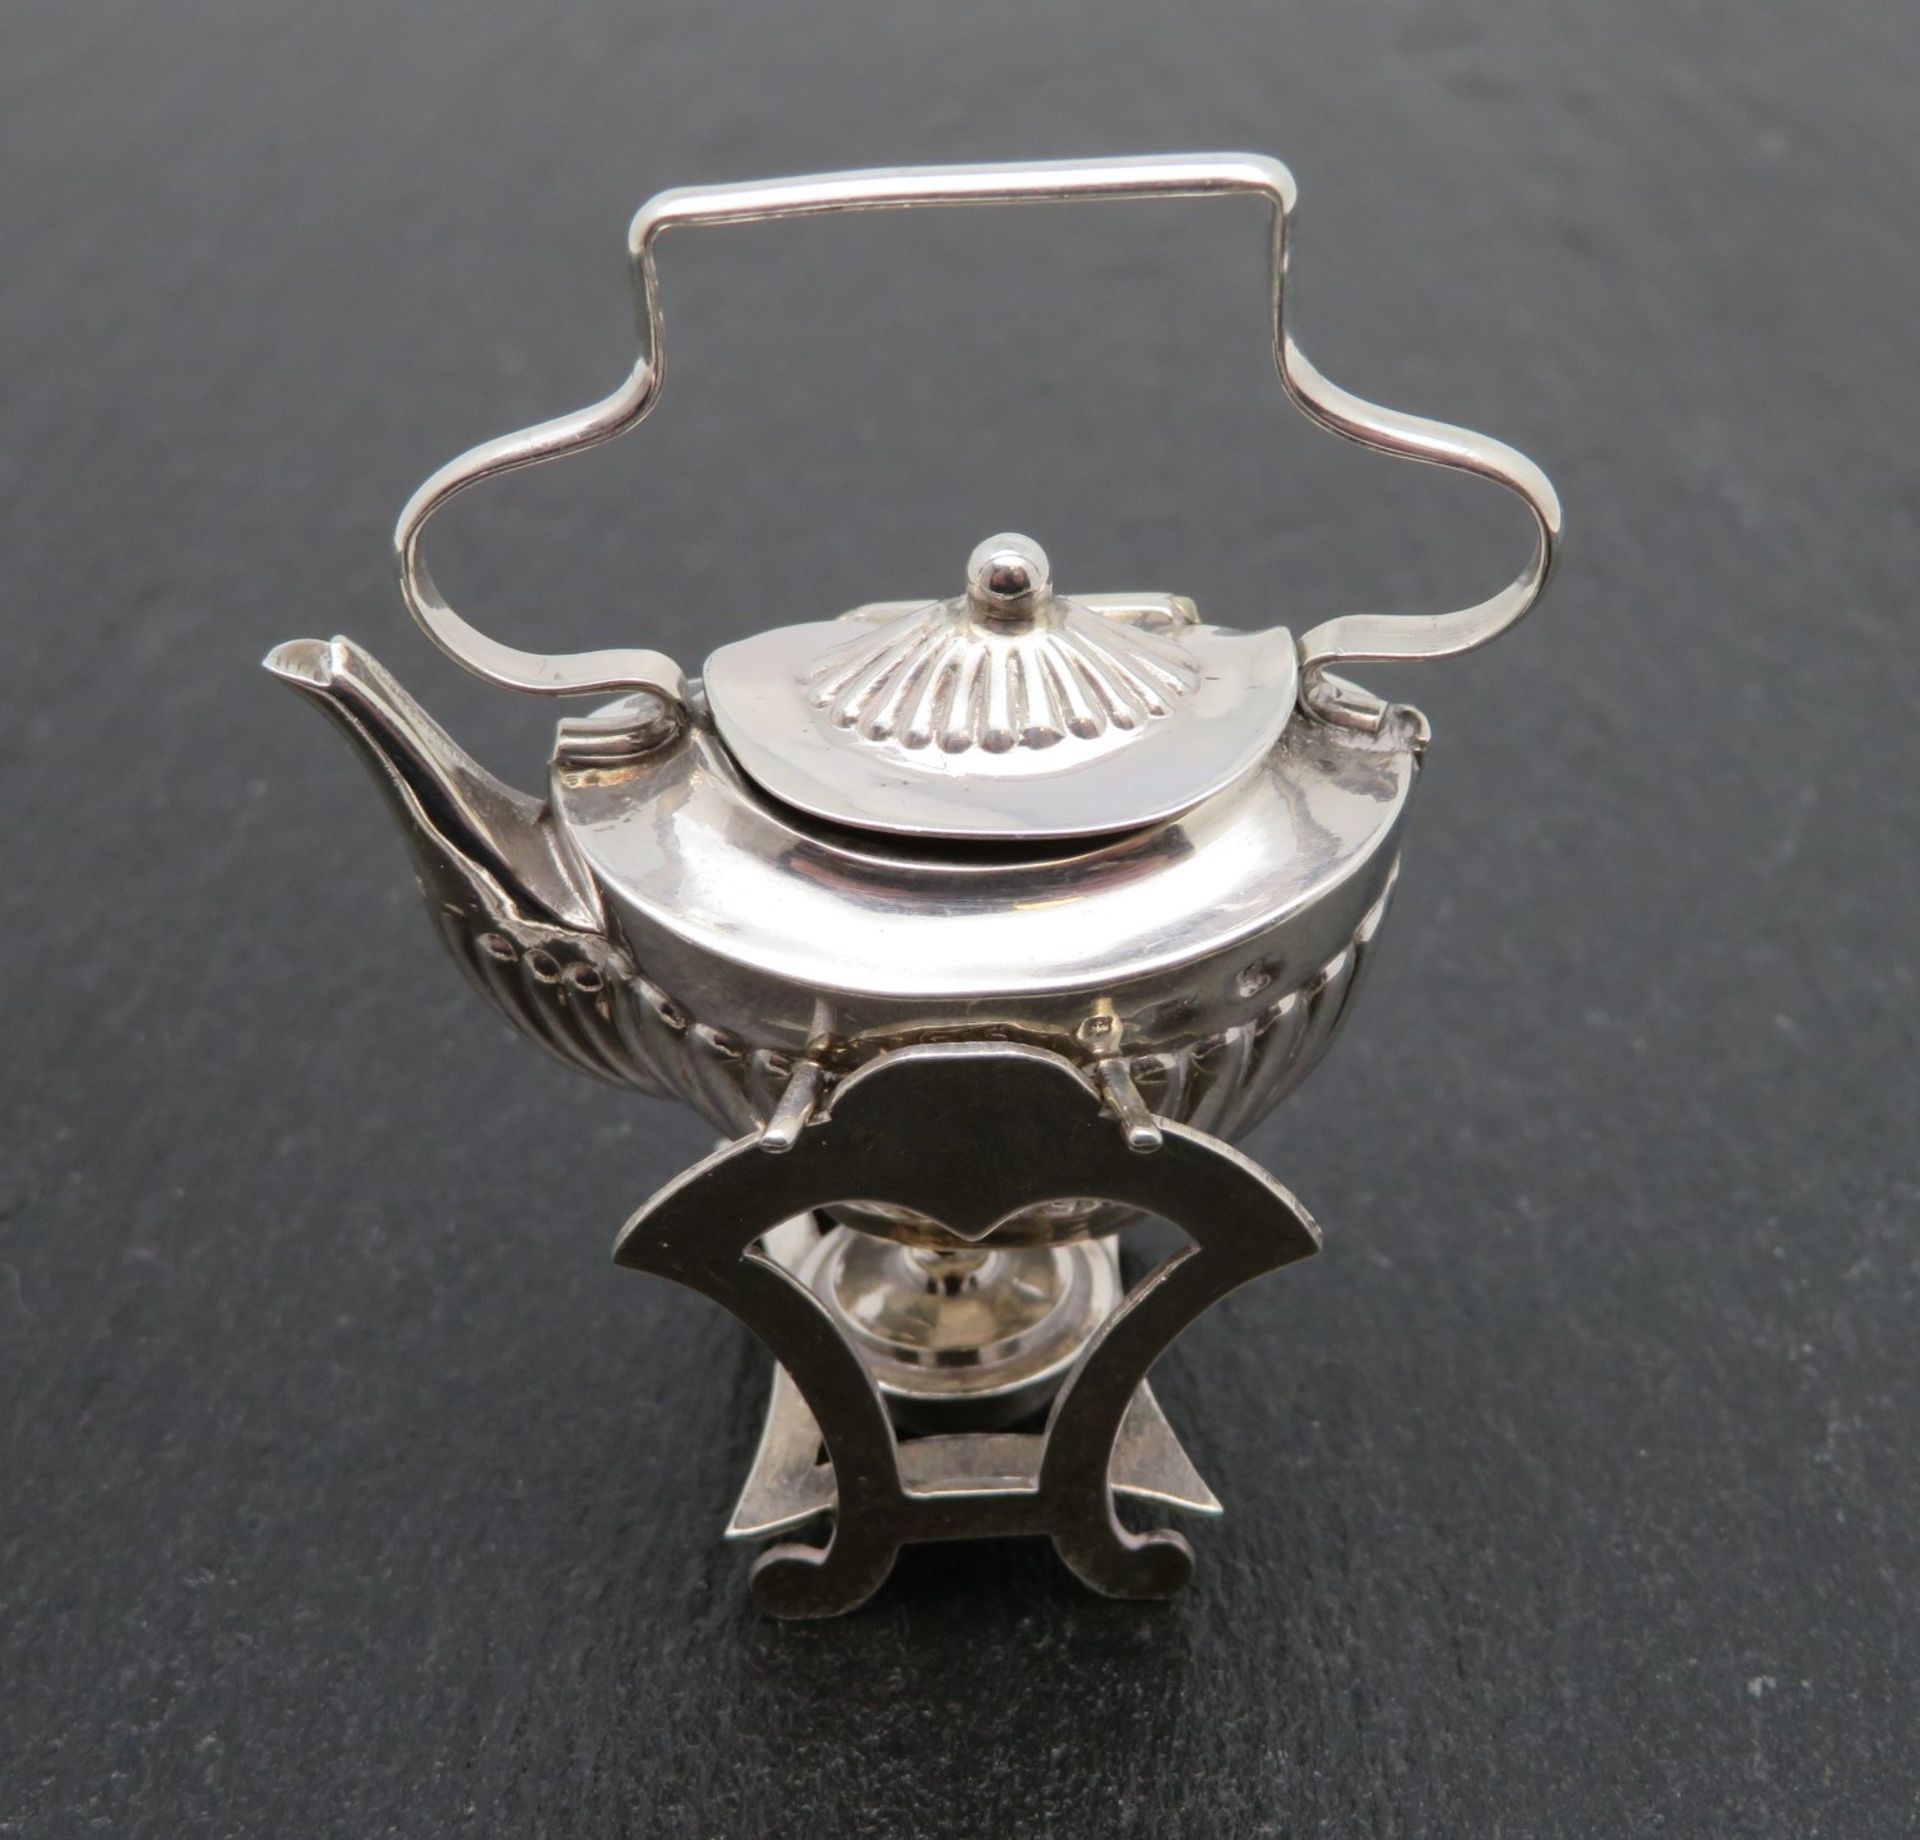 Puppenstubenzubehör/Miniatursilber, England, 11 teiliges Service, Silber 925/000, gepunzt, 63,7 g, - Image 2 of 3